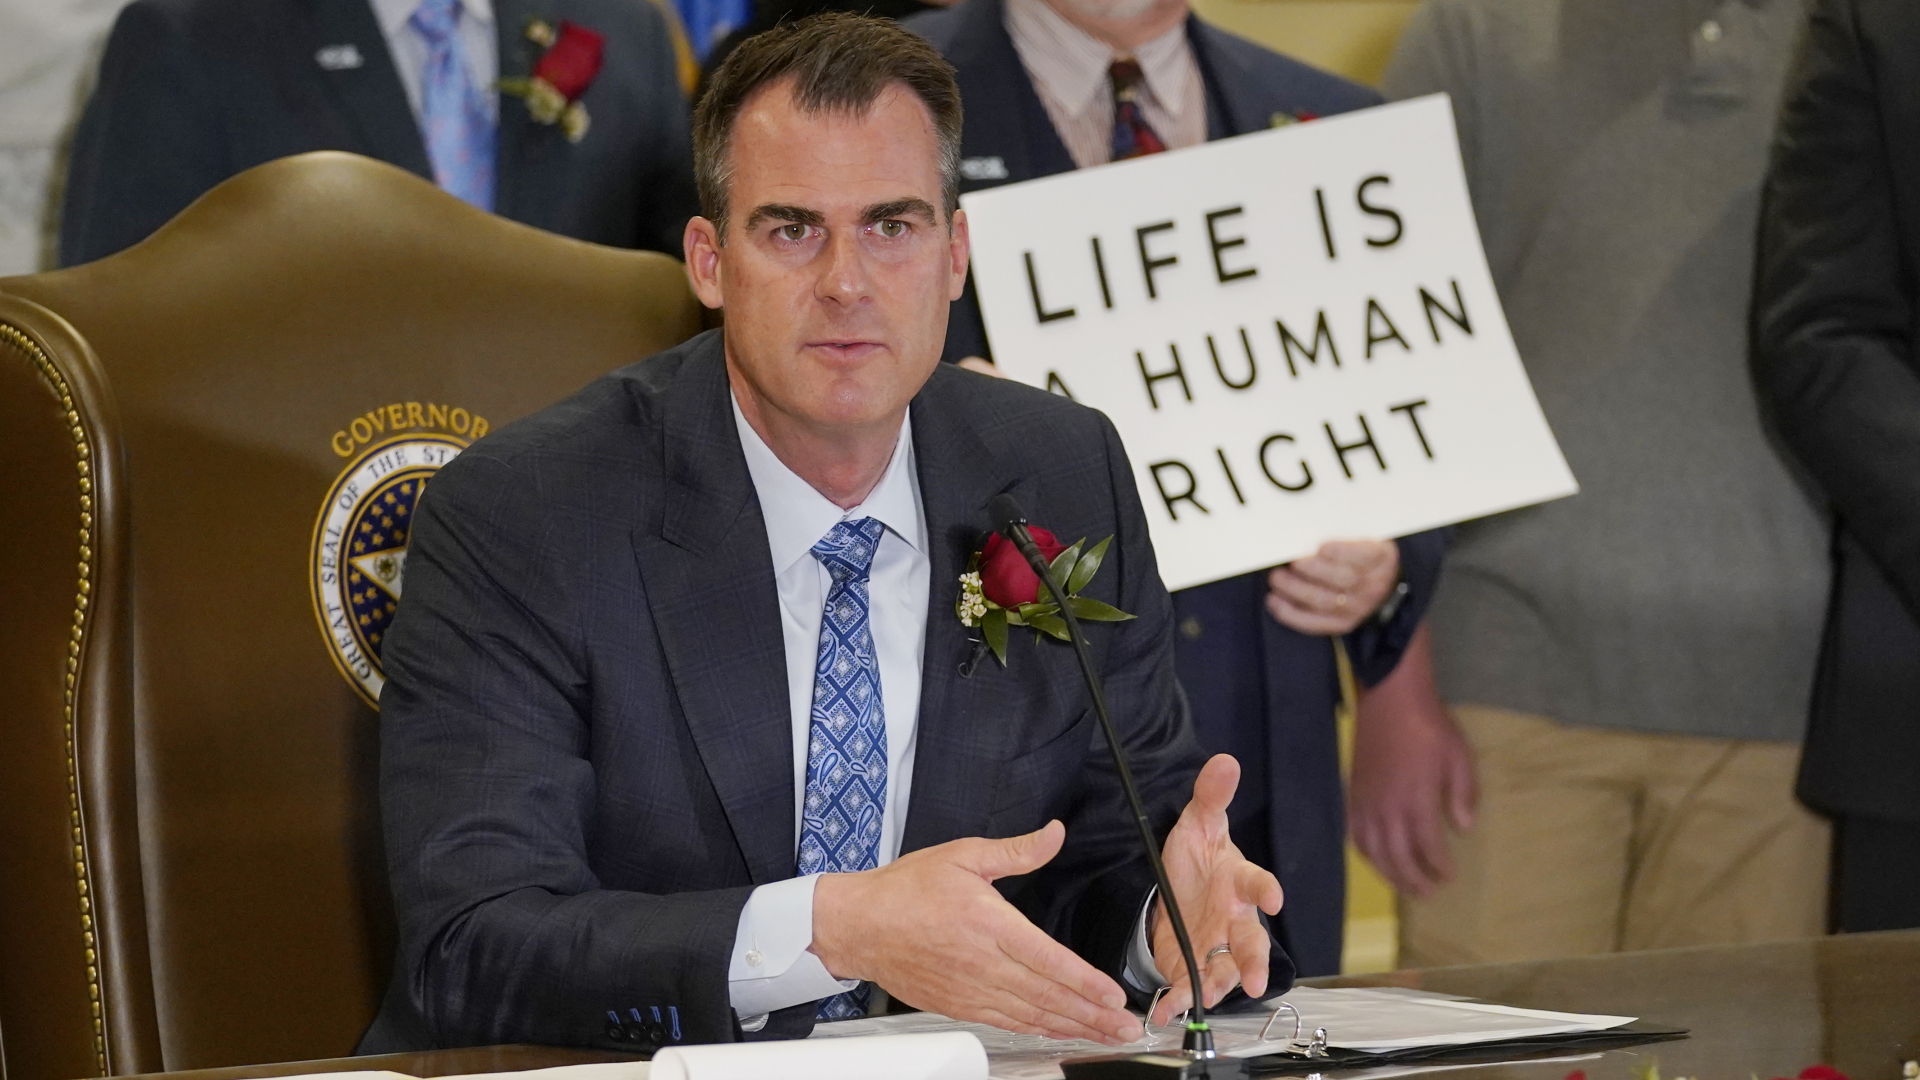 Kevin Stitt, Gouverneur von Oklahoma, stellt das neue Abtreibungsgesetz des US-Bundestaates vor. | dpa